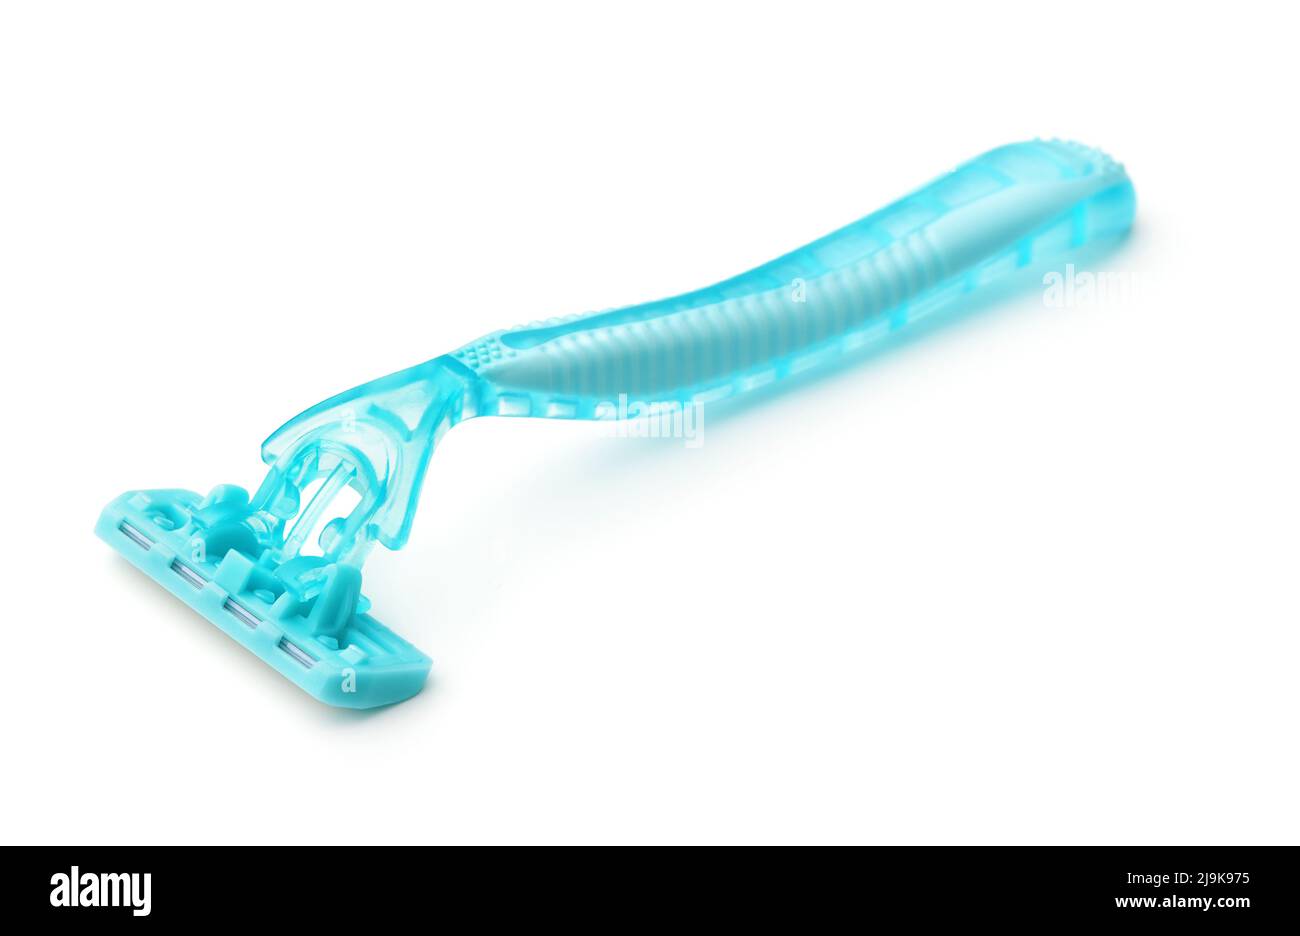 Turquoise plastic shaving razor isolated on white Stock Photo